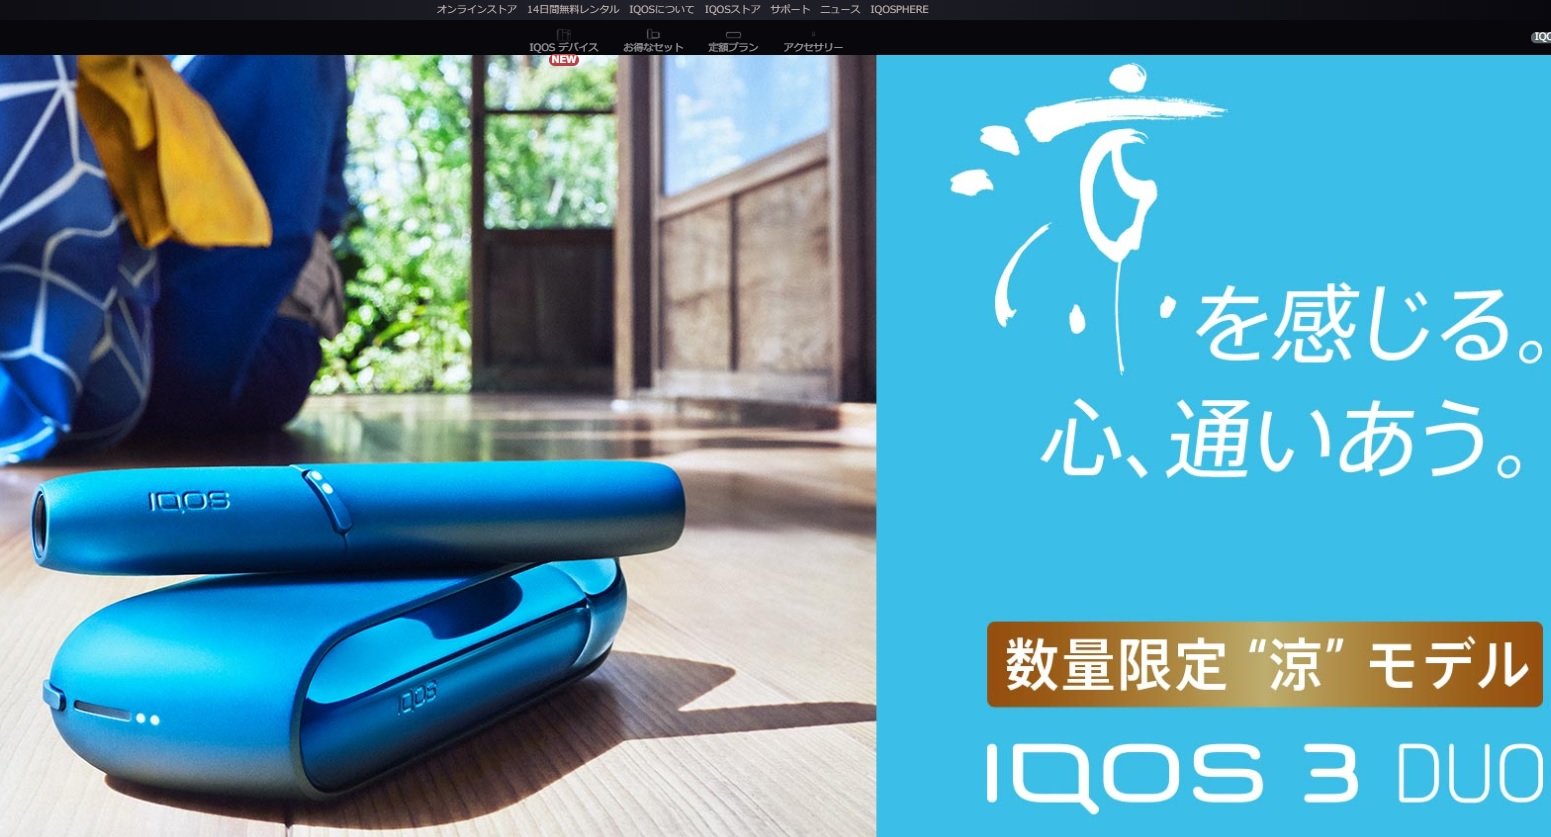 「IQOS 3 DUO 数量限定新色 “涼”モデル」世界先行発売 アーティストとのコラボで販促 - ITmedia ビジネスオンライン